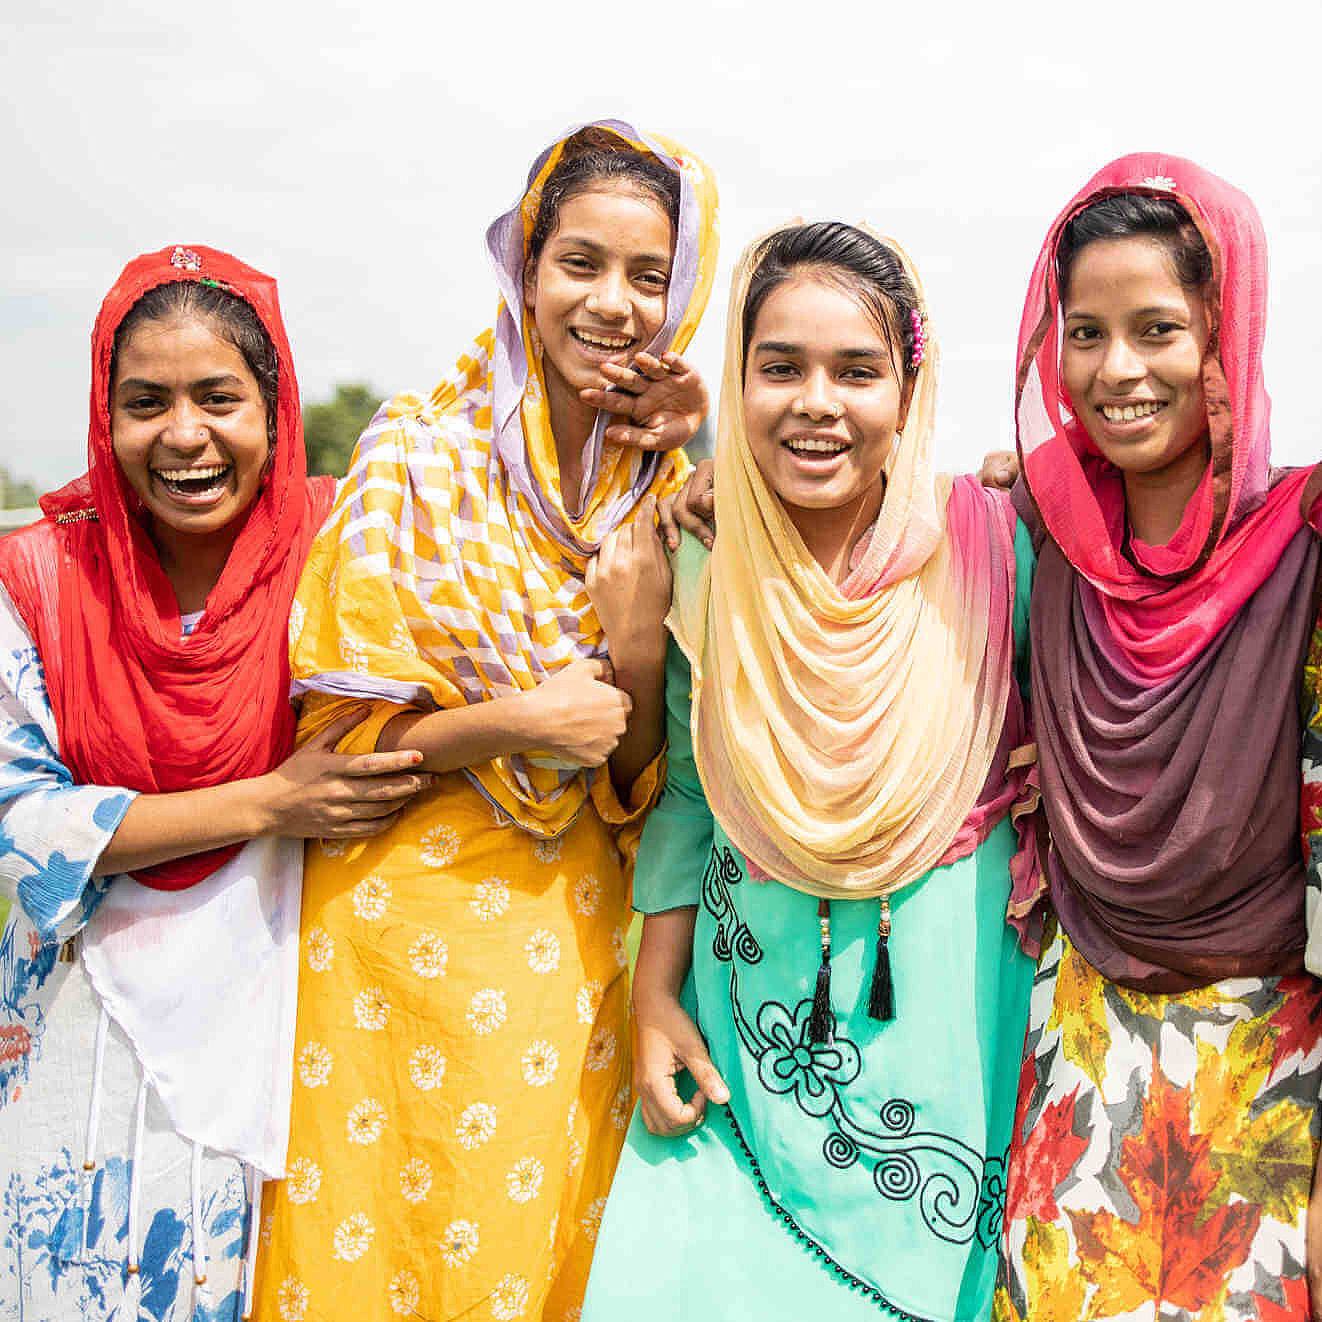 Fünf Teilnehmerinnen der CARE-Schulung in Bangladesch zum Thema "Frauen stärken" stehen zusammen und lachen